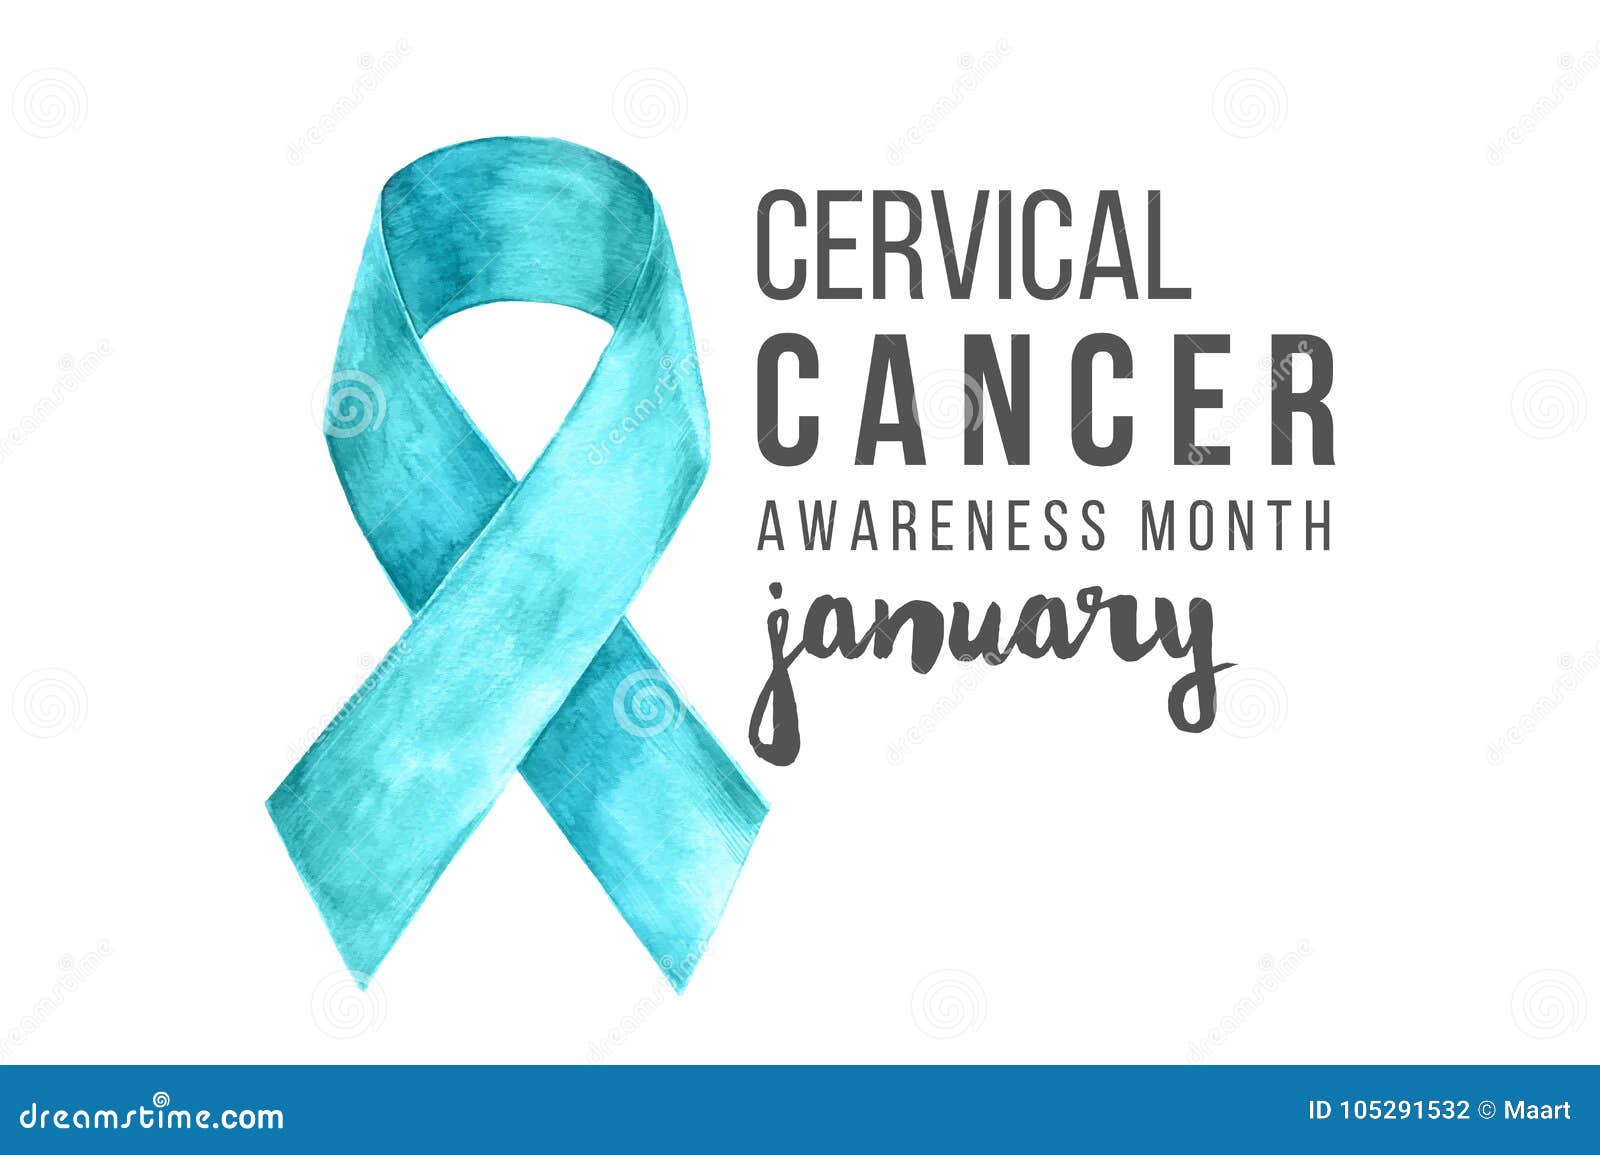 cervical cancer awareness month banner